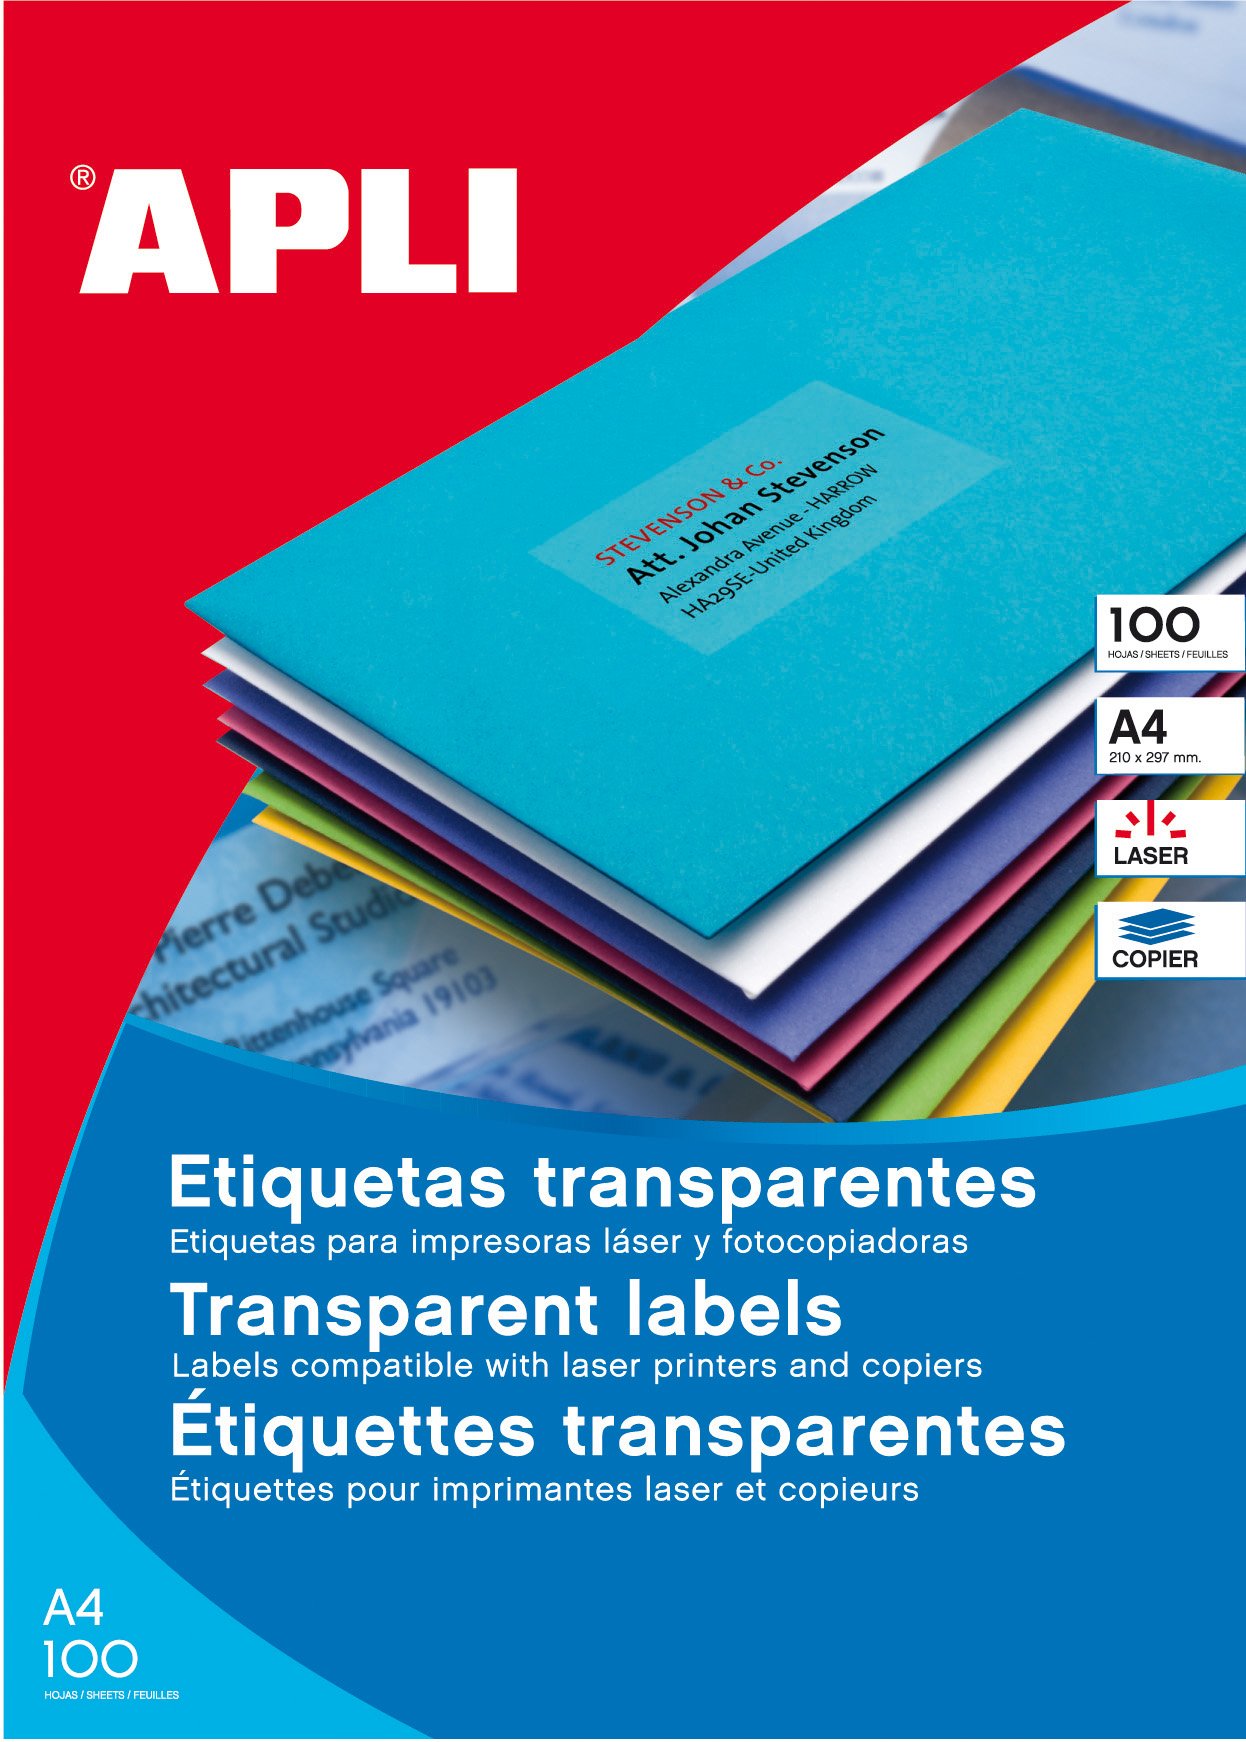 APLI univerzální etikety voděodolné, 210 x 297 mm, polyesterové, transparentní